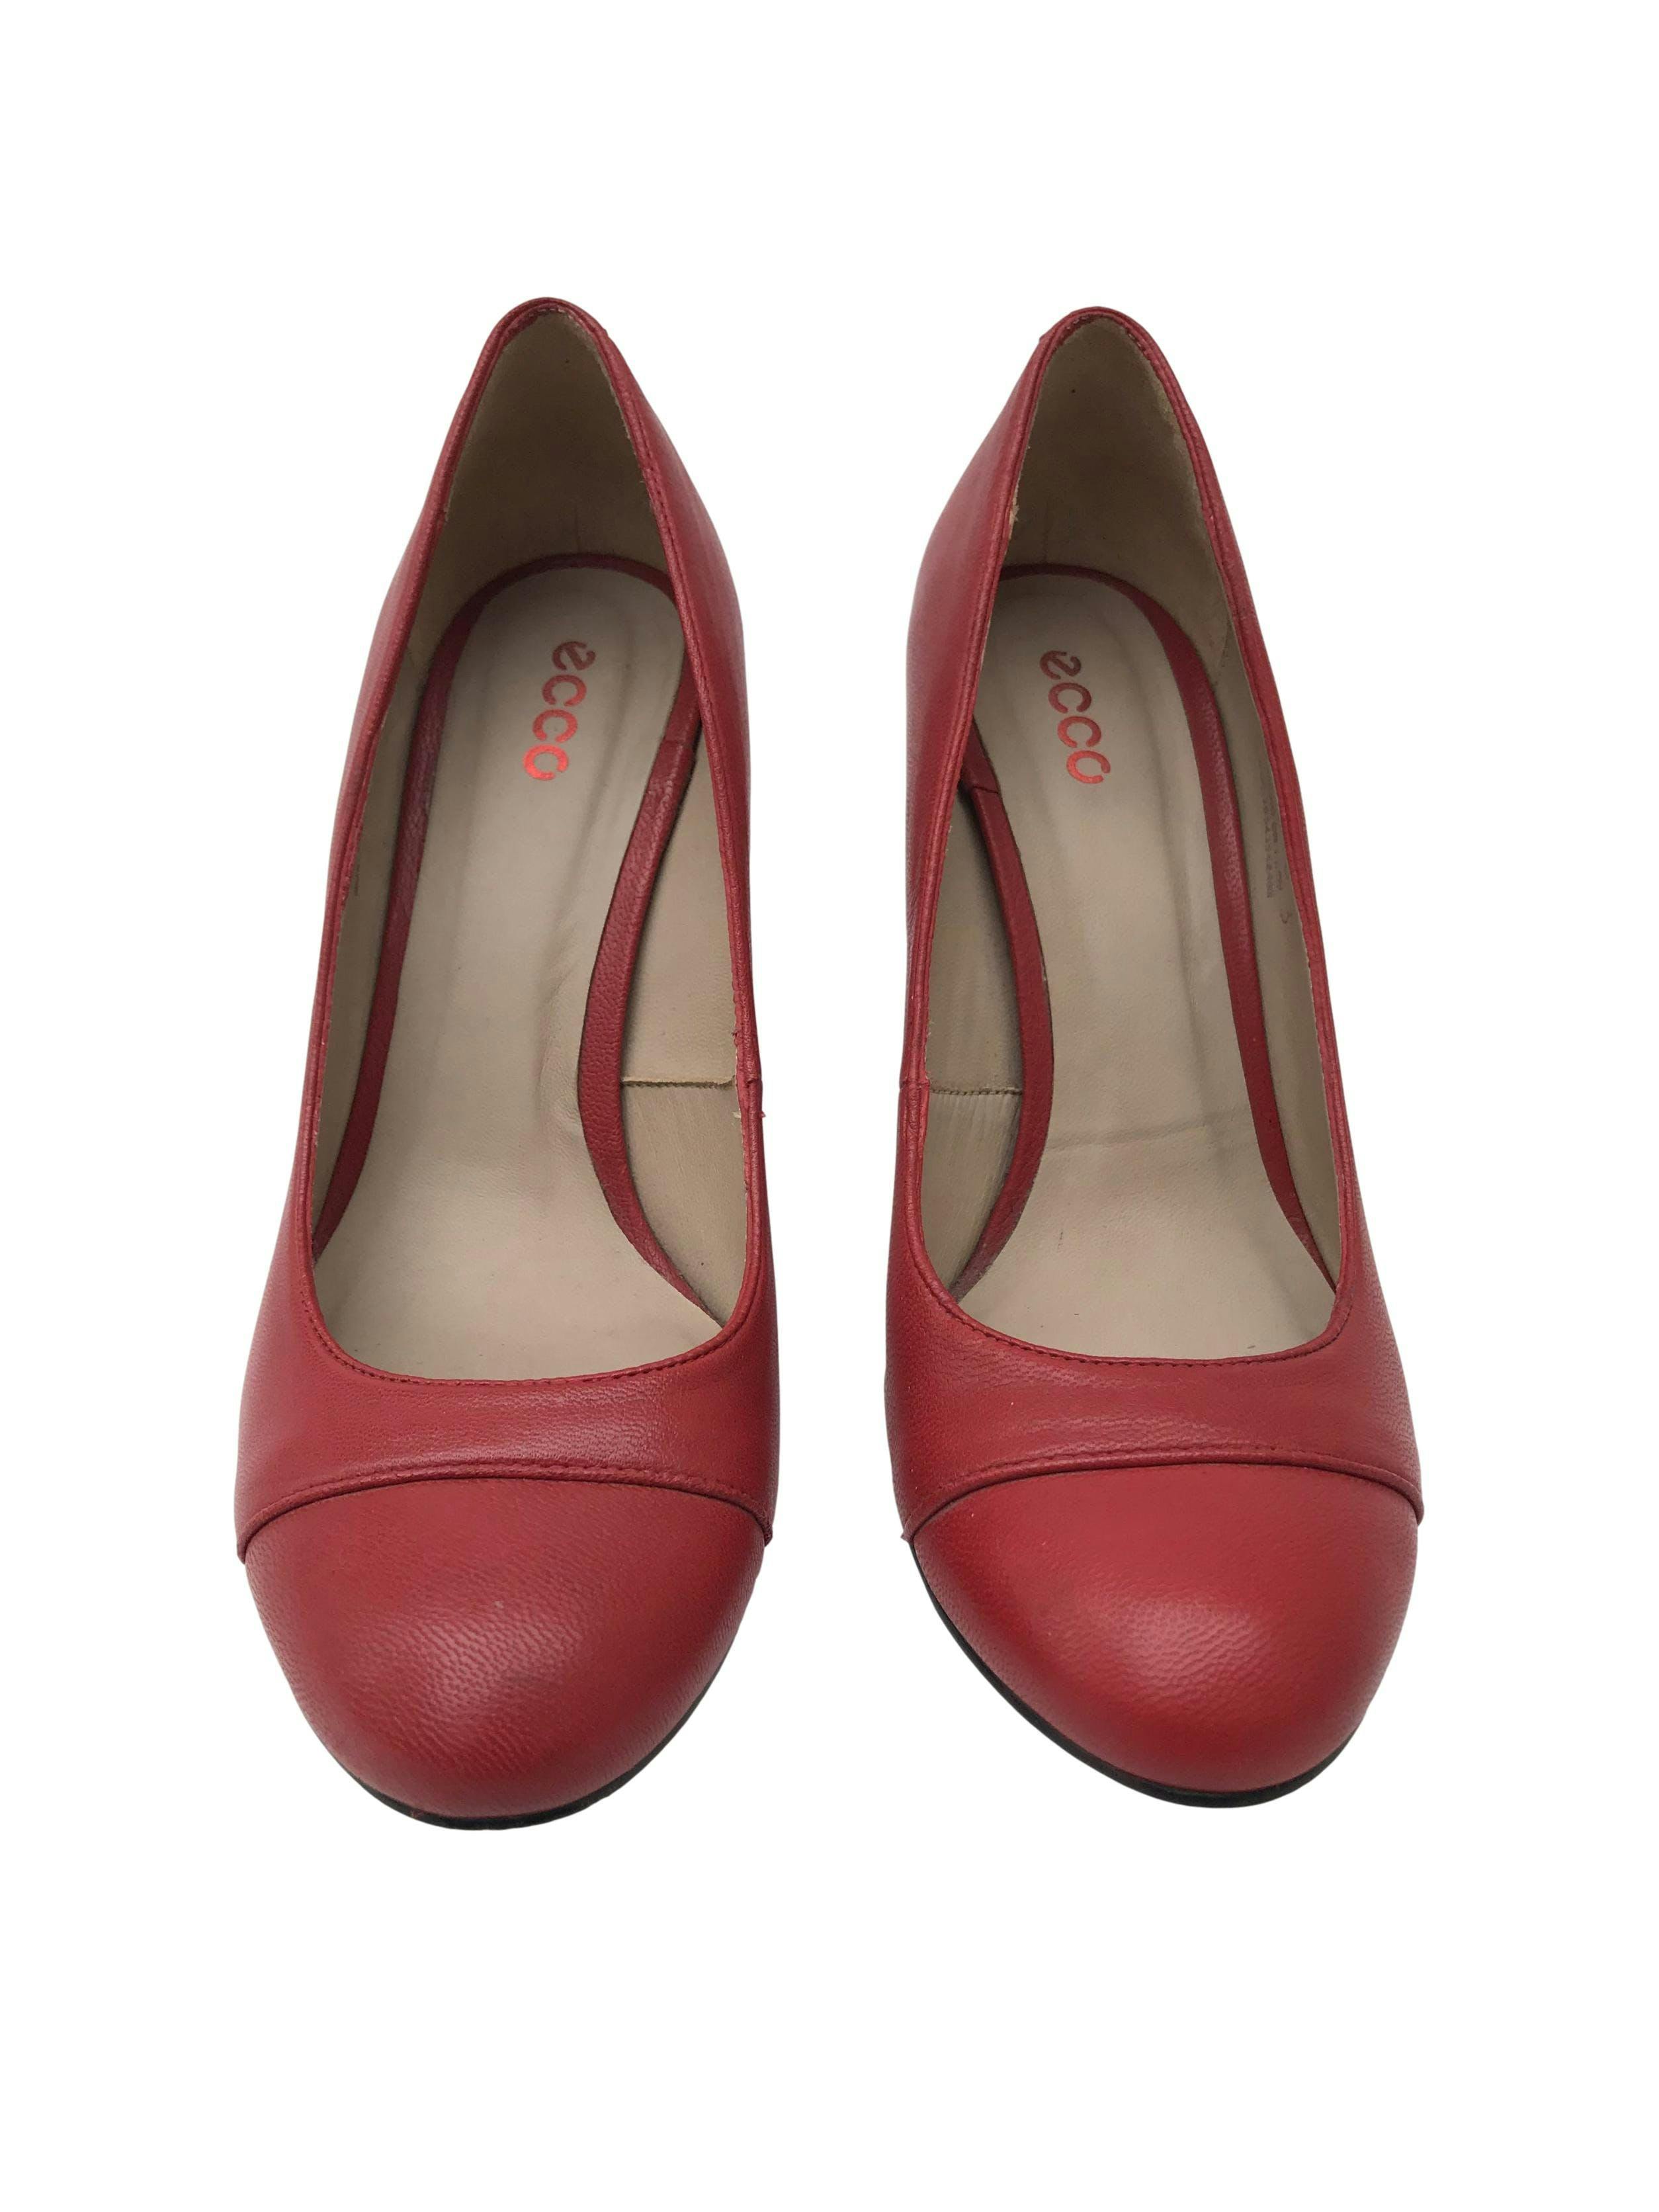 Zapatos Ecco rojos de cuero, taco ancho 9cm. Estado 9/10. Precio original S/ 230